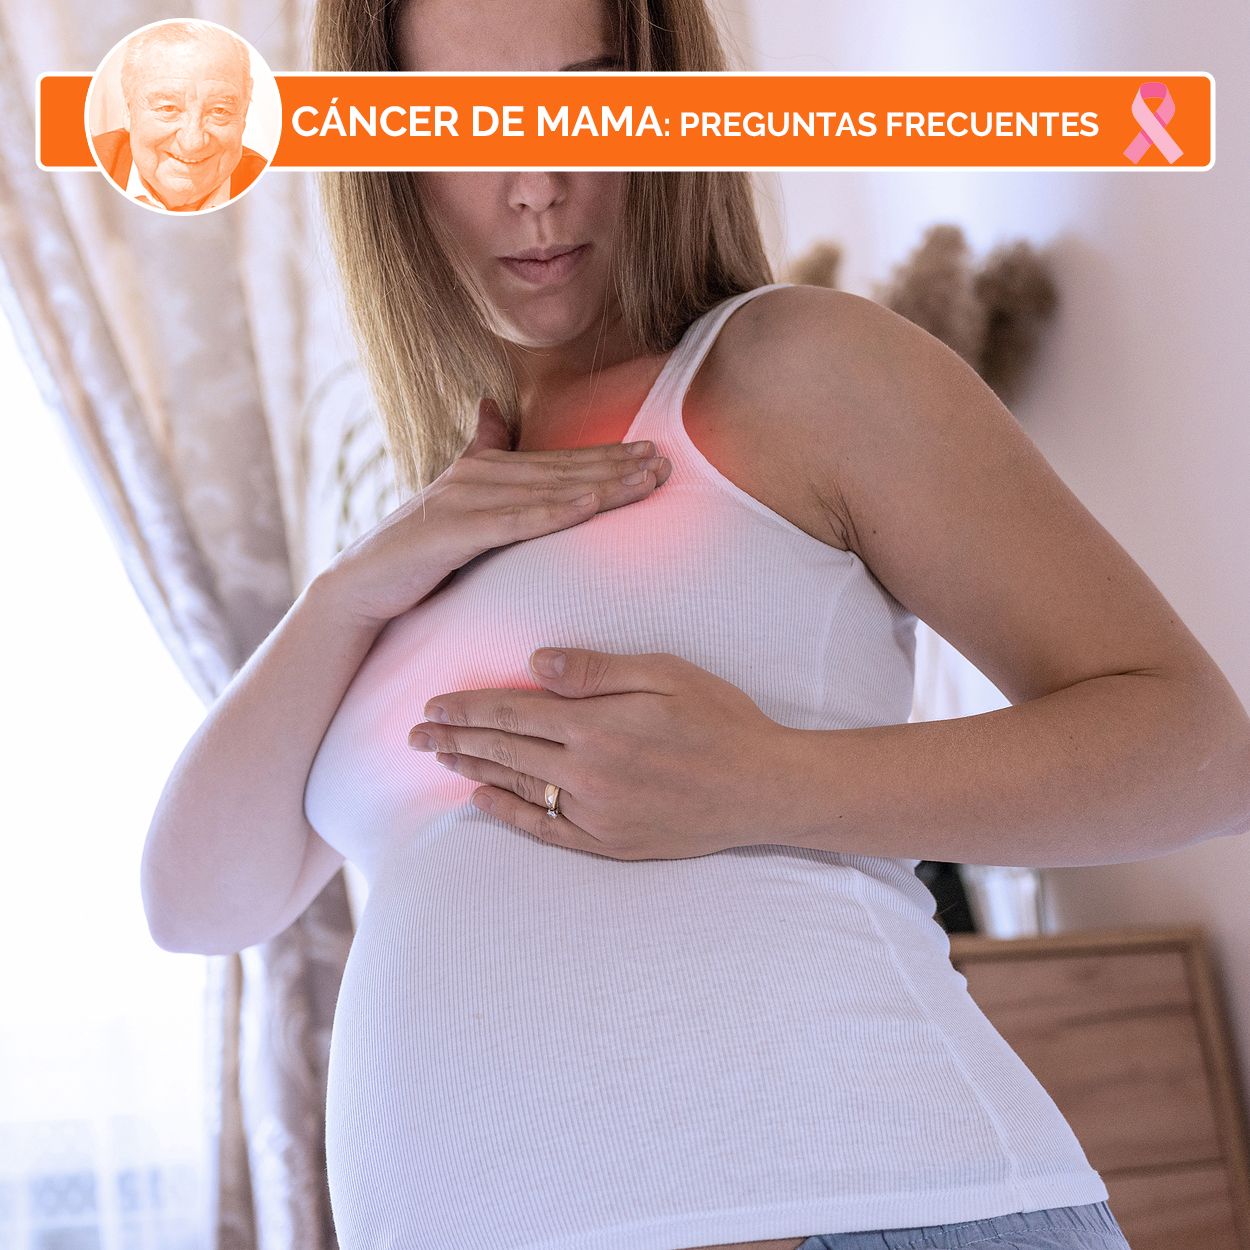 ¿Puedo quedarme embarazada con cáncer de mama? ¿Puede surgir un cáncer de mama durante el embarazo?